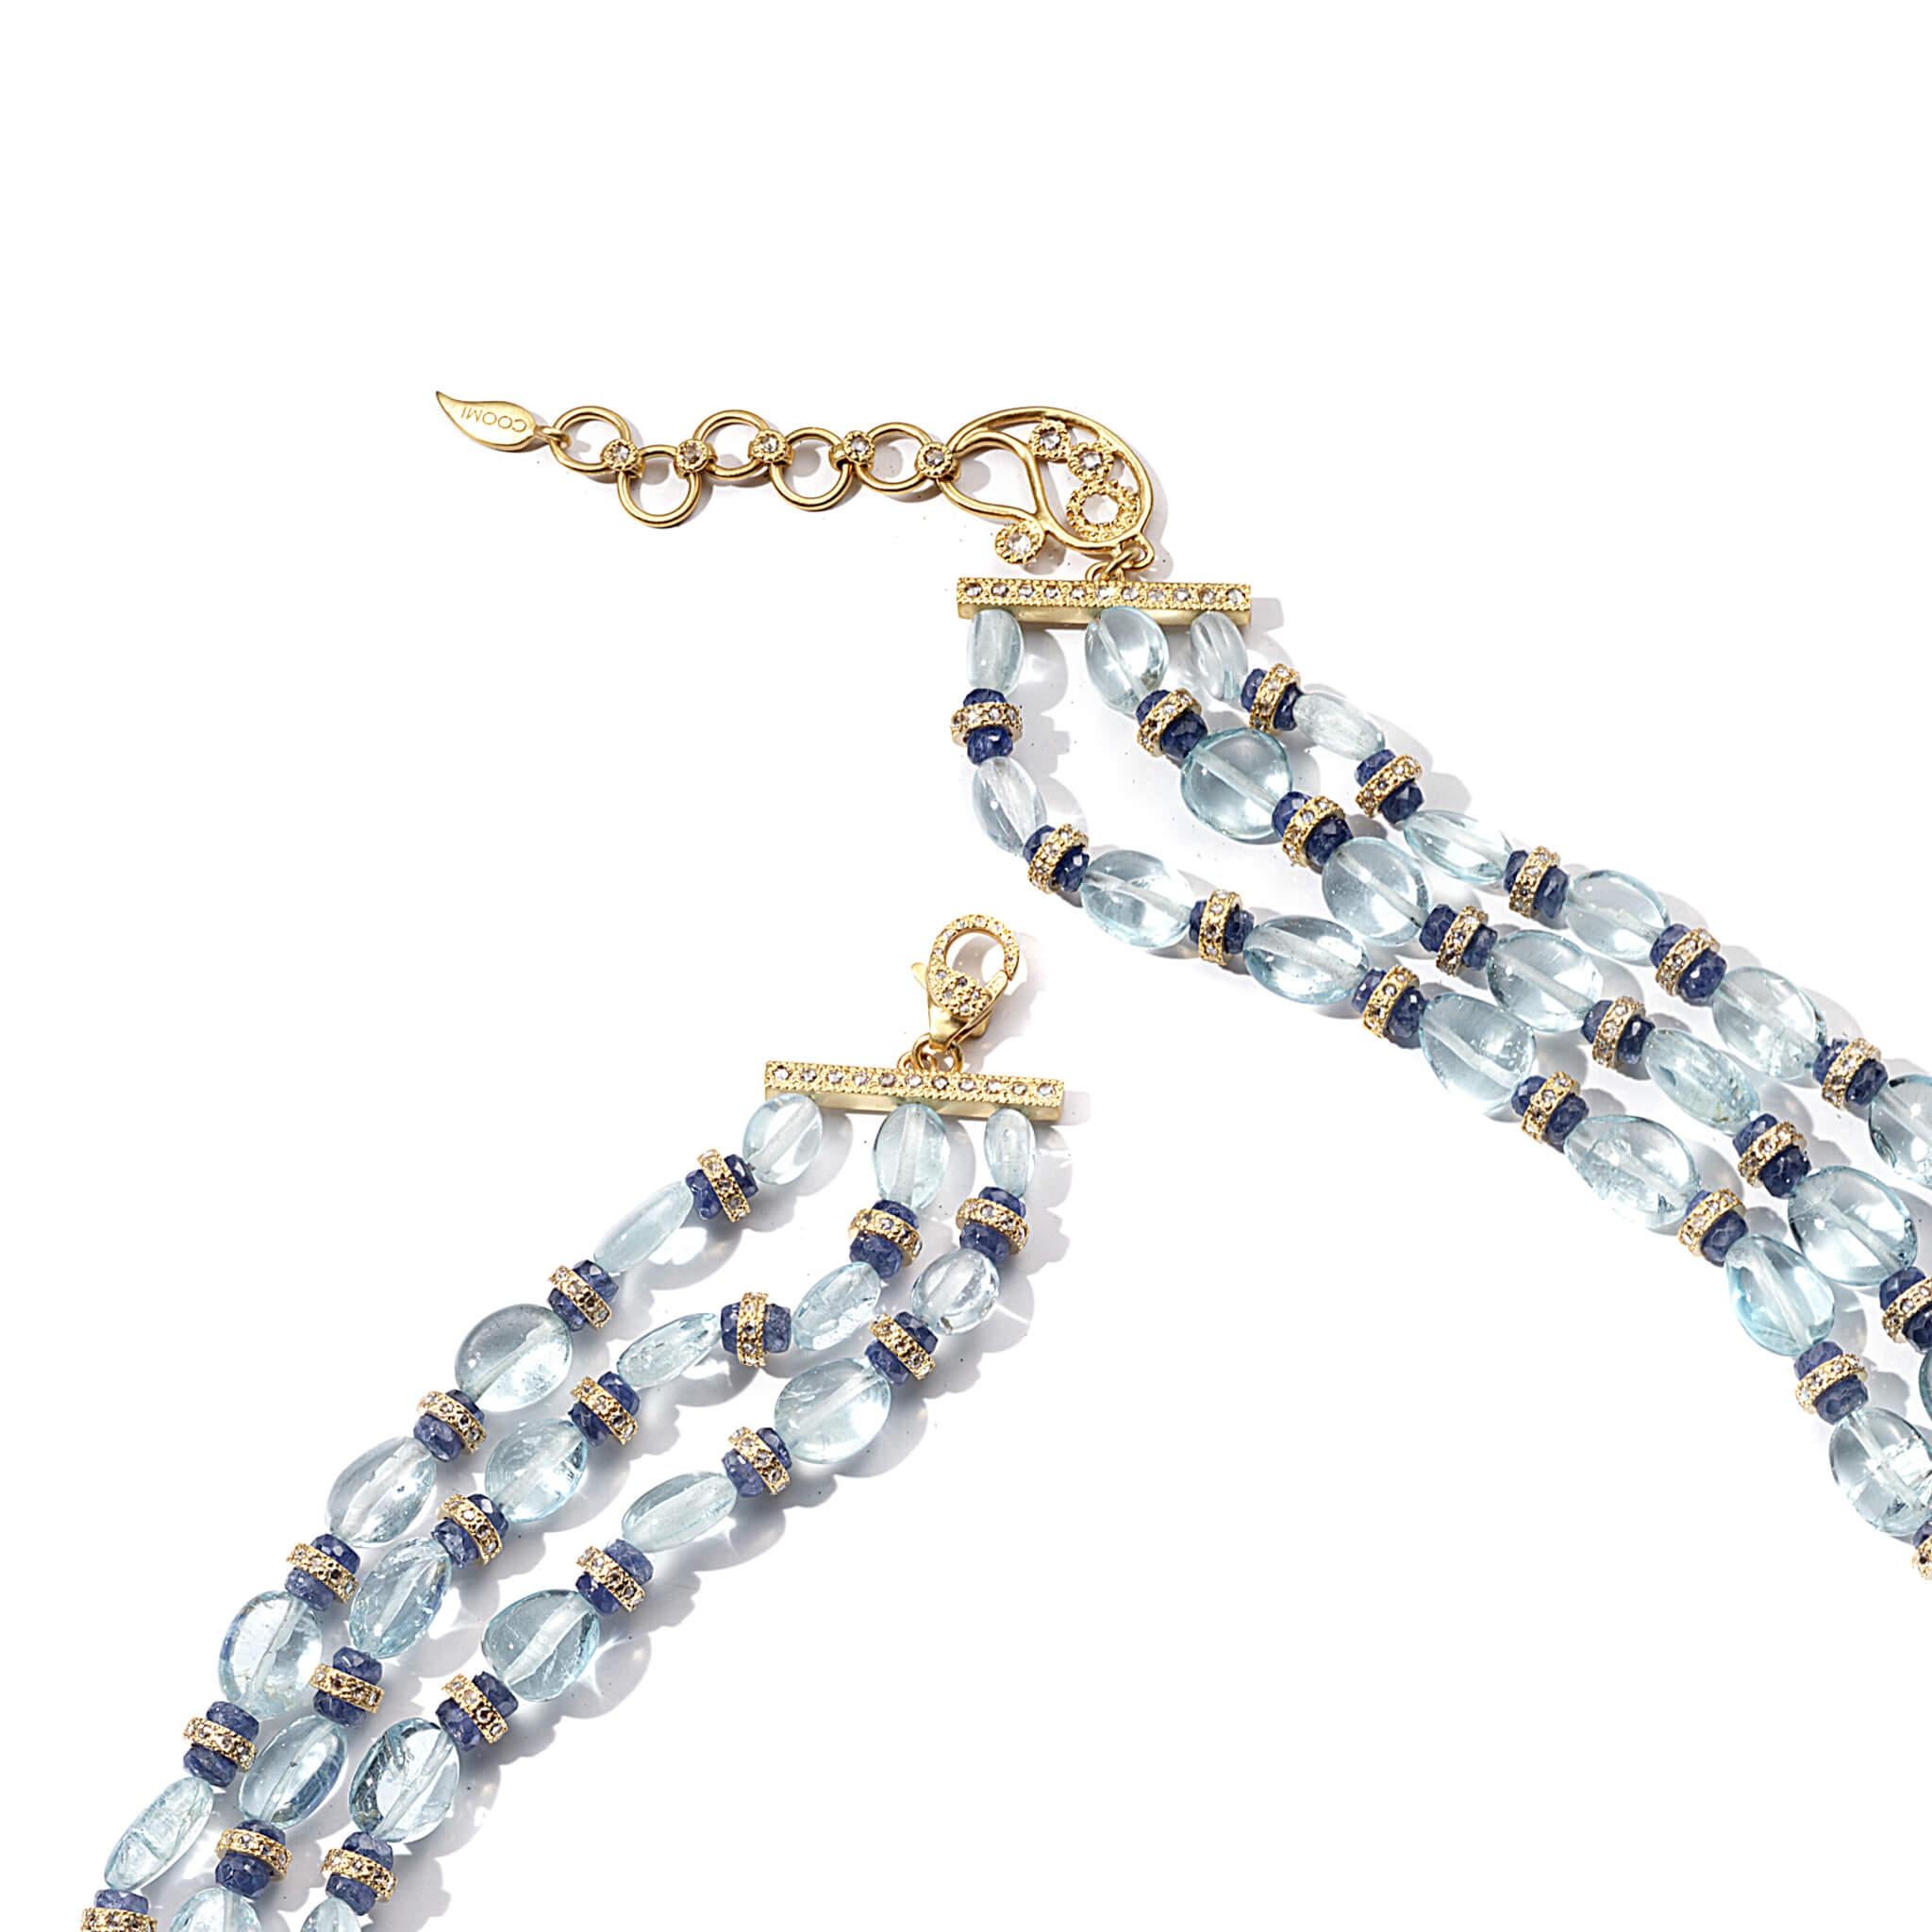 Collier Affinity 16 pouces avec 4.84CTS de diamants, 244.08CTS de perles d'aigue-marine et 38.72CTS de perles de saphir bleu. Serti dans de l'or 20K. Une rallonge est disponible pour une fixation plus longue.